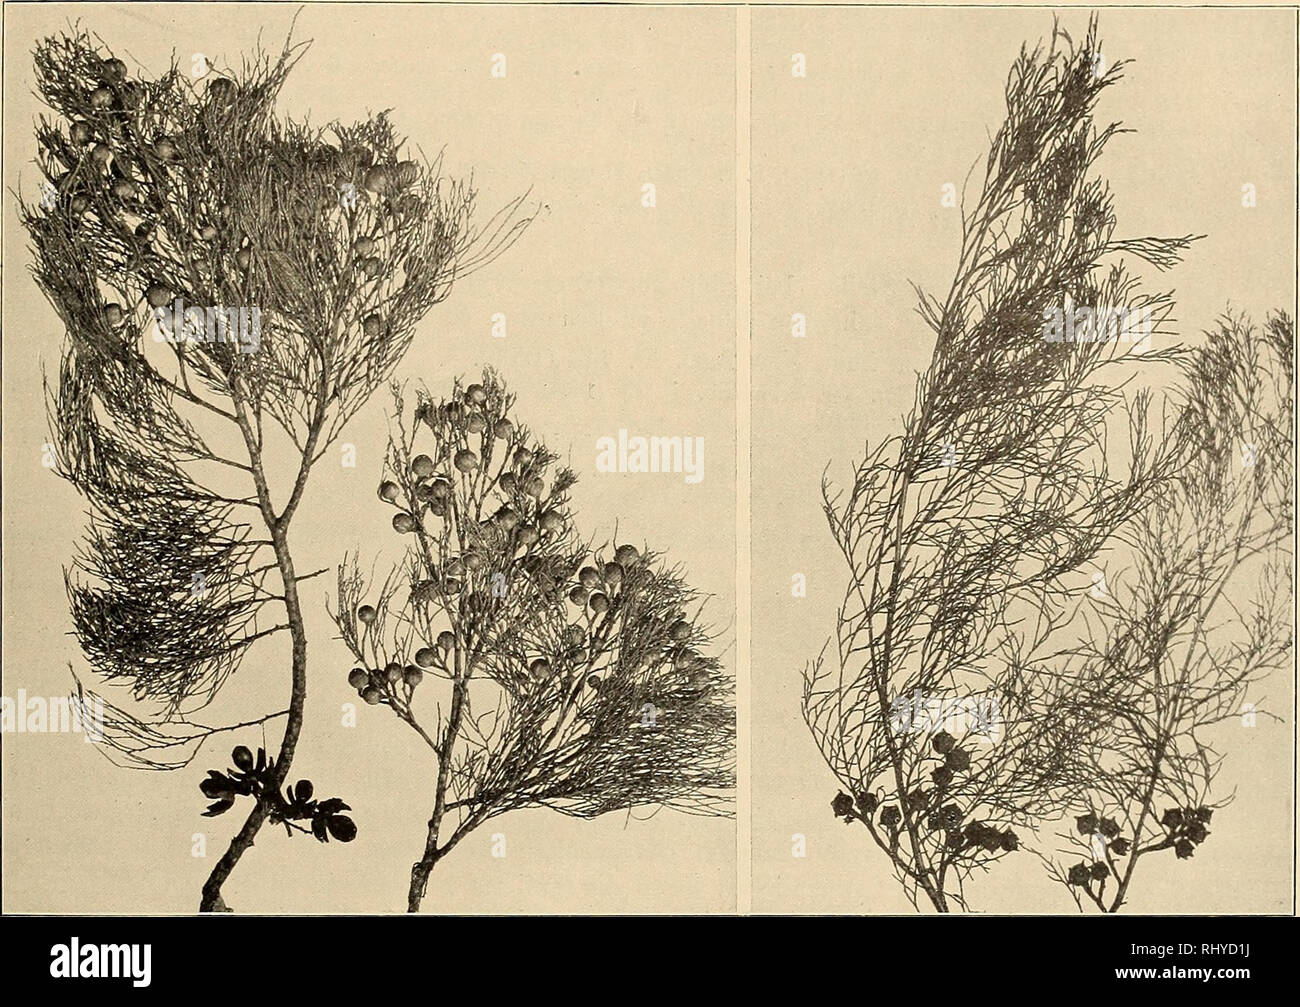 . Beiträge zur Flora und Pflanzengeographie Australiens. La botanica. - 249 - Frenela rhomboidea Endl. Syn. Conif. 36 (1847), Parlat. in DC. Prodr. XVI. 2, p. 447 (1868), Benth. Fl. Austr. VI. 237 (1873), J. H. cameriera. Usef. PI. Aust. 543 (1889), Turner in Proc. Linn. Soc. N. S.Galles XXVIII. 302 (1903). Abbildung: Textfig. 61, rechts. Geogr. Verbreitung: Queensland, N.S.Wales, Victoria, Australia del Sud, Tasmanien. Süd-Queensland: Stradbroke Island (Domin, IV. 1910), häufig.. Fig. 61. Link: Callitris eolumellaris F. v. Muell., rechts: C. eupressiformis Venten., beide nach Exemplaren vom Stradbroke è Foto Stock